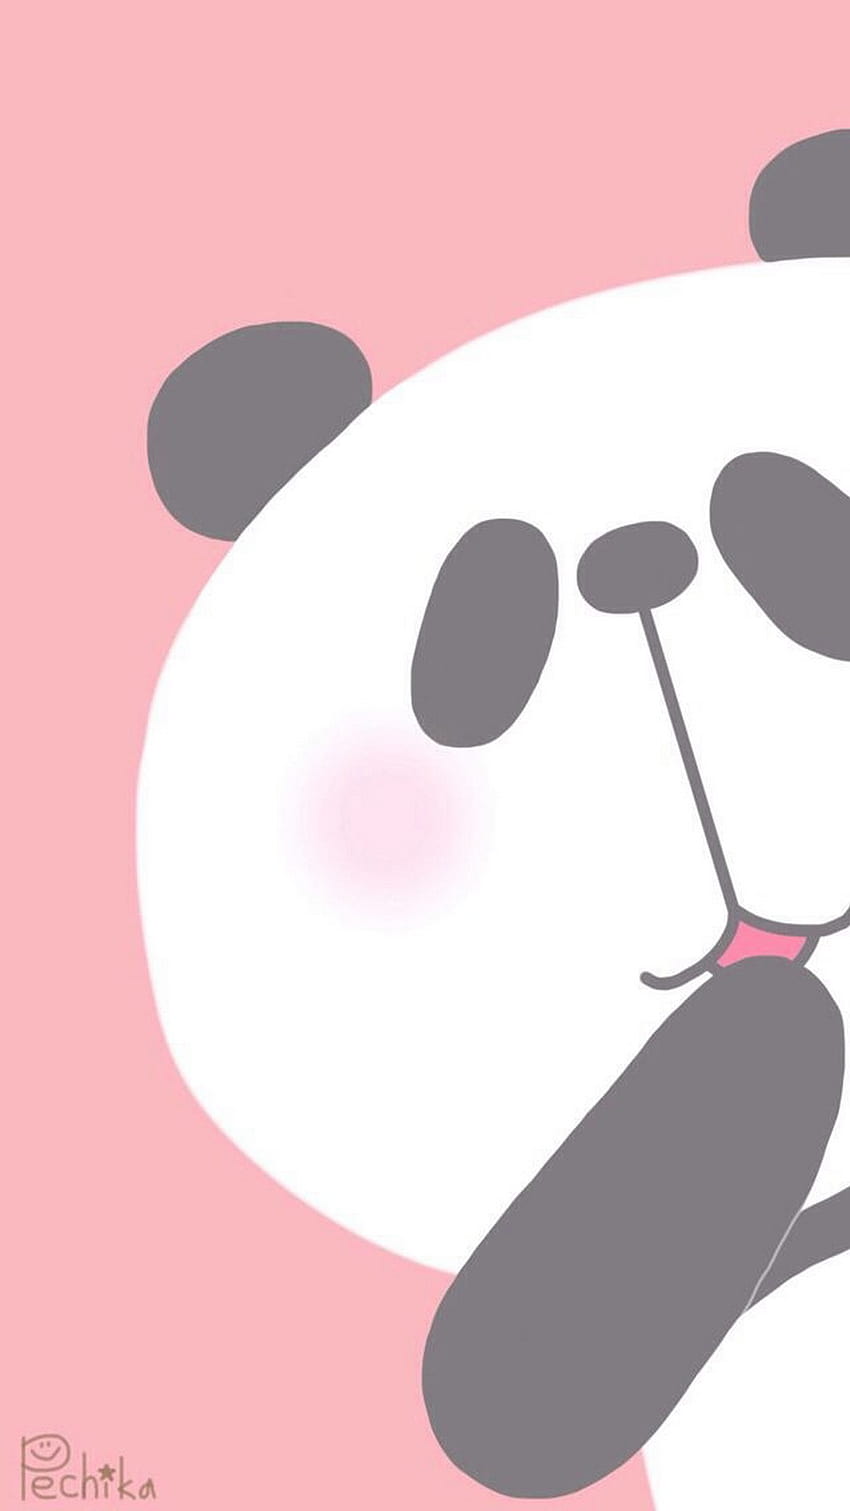 Cute panda wallpaper Vectors & Illustrations for Free Download | Freepik